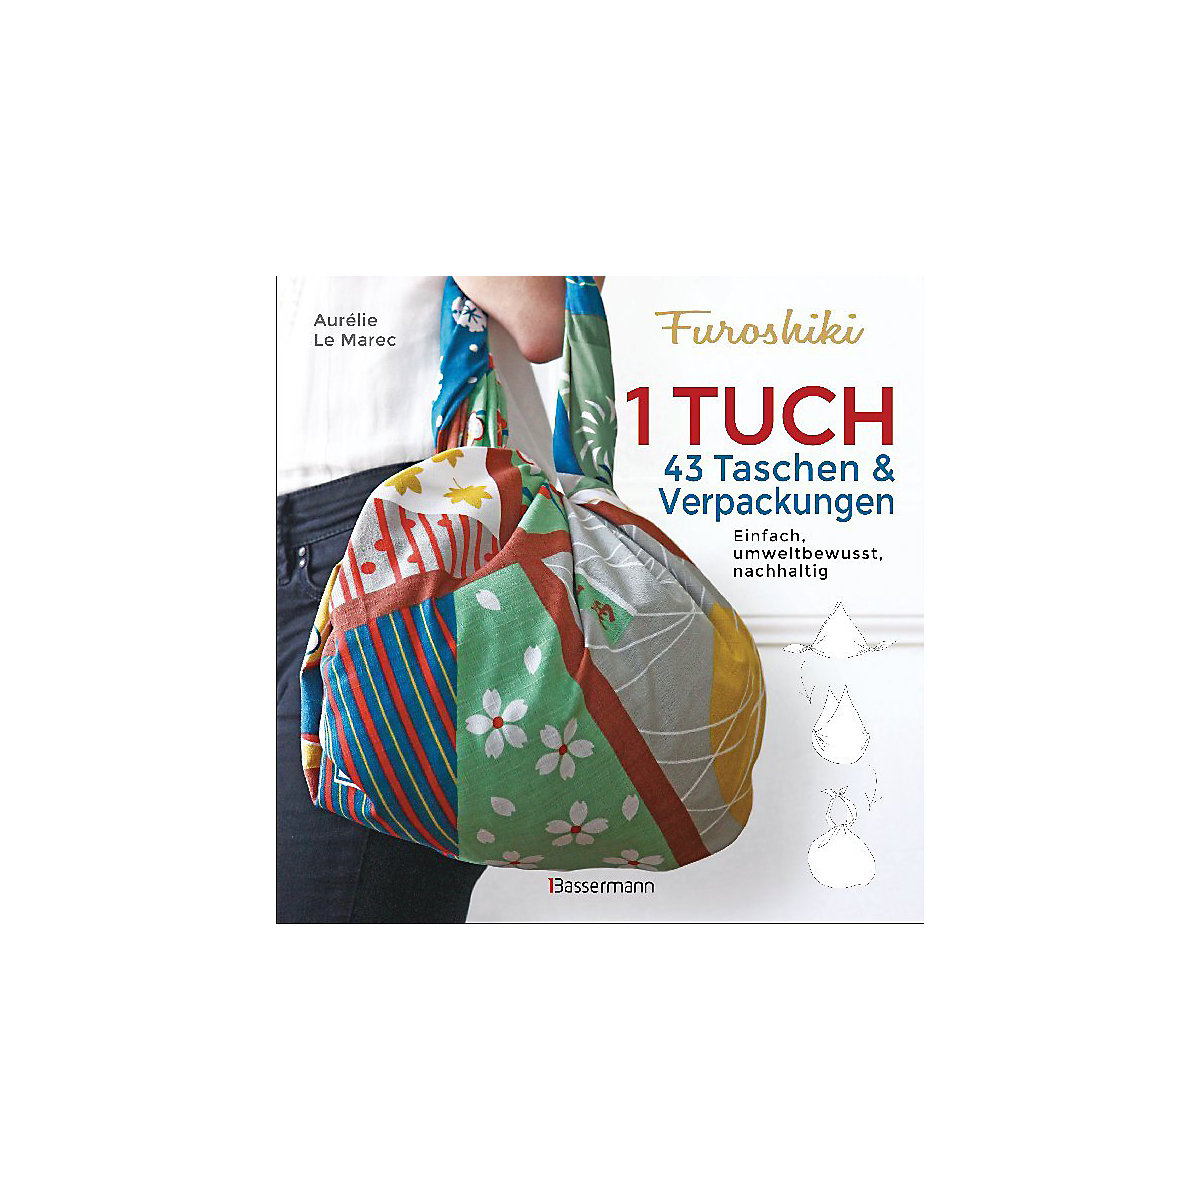 Furoshiki. Ein Tuch 43 Taschen & Verpackungen. Einfach nachhaltig plastikfrei